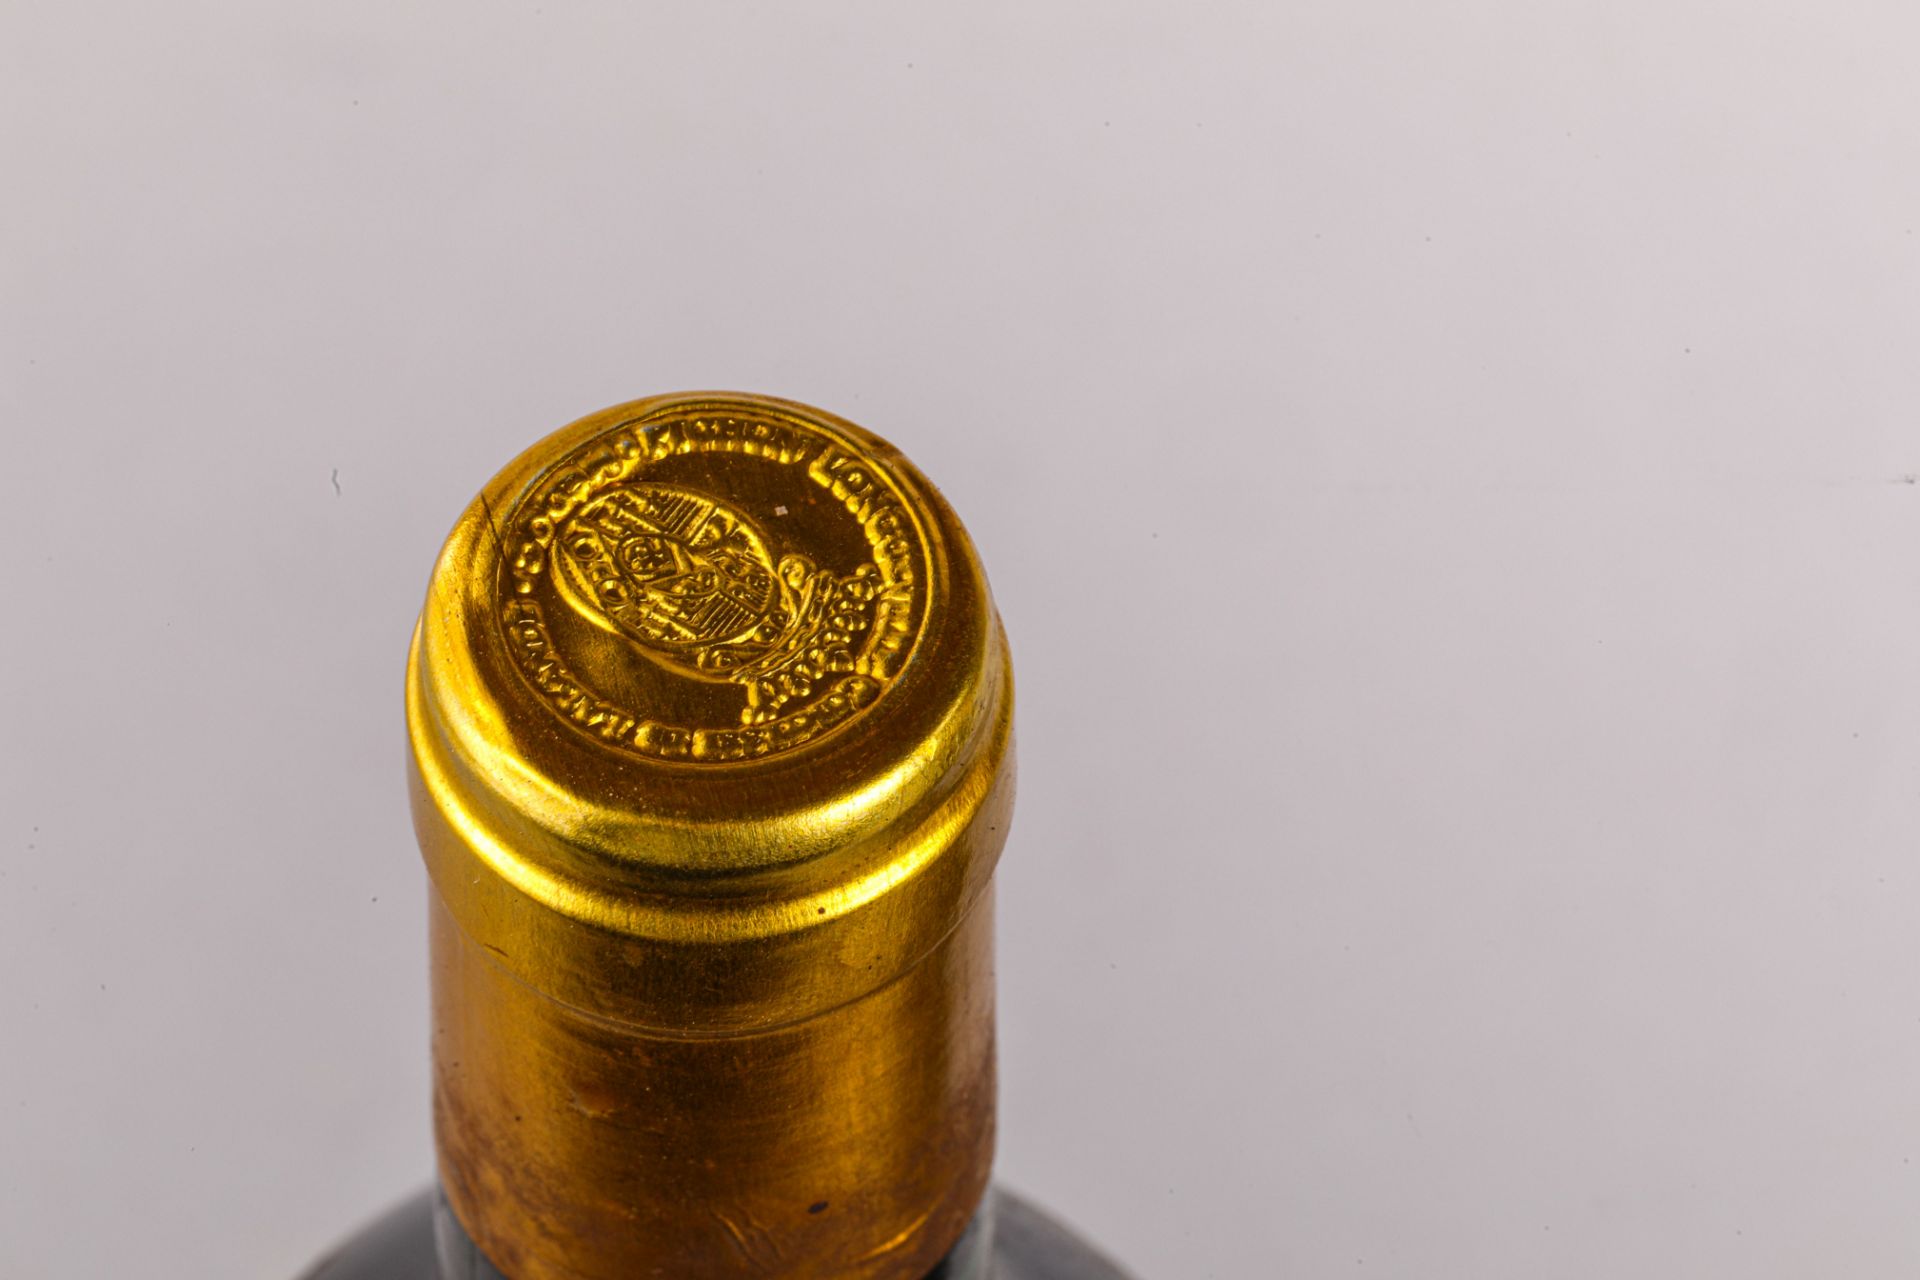 CHÂTEAU PICHON LONGUEVILLE COMTESSE DE LALANDE 2 bouteilles Grand cru classé Pauillac 1989 - Bild 4 aus 5